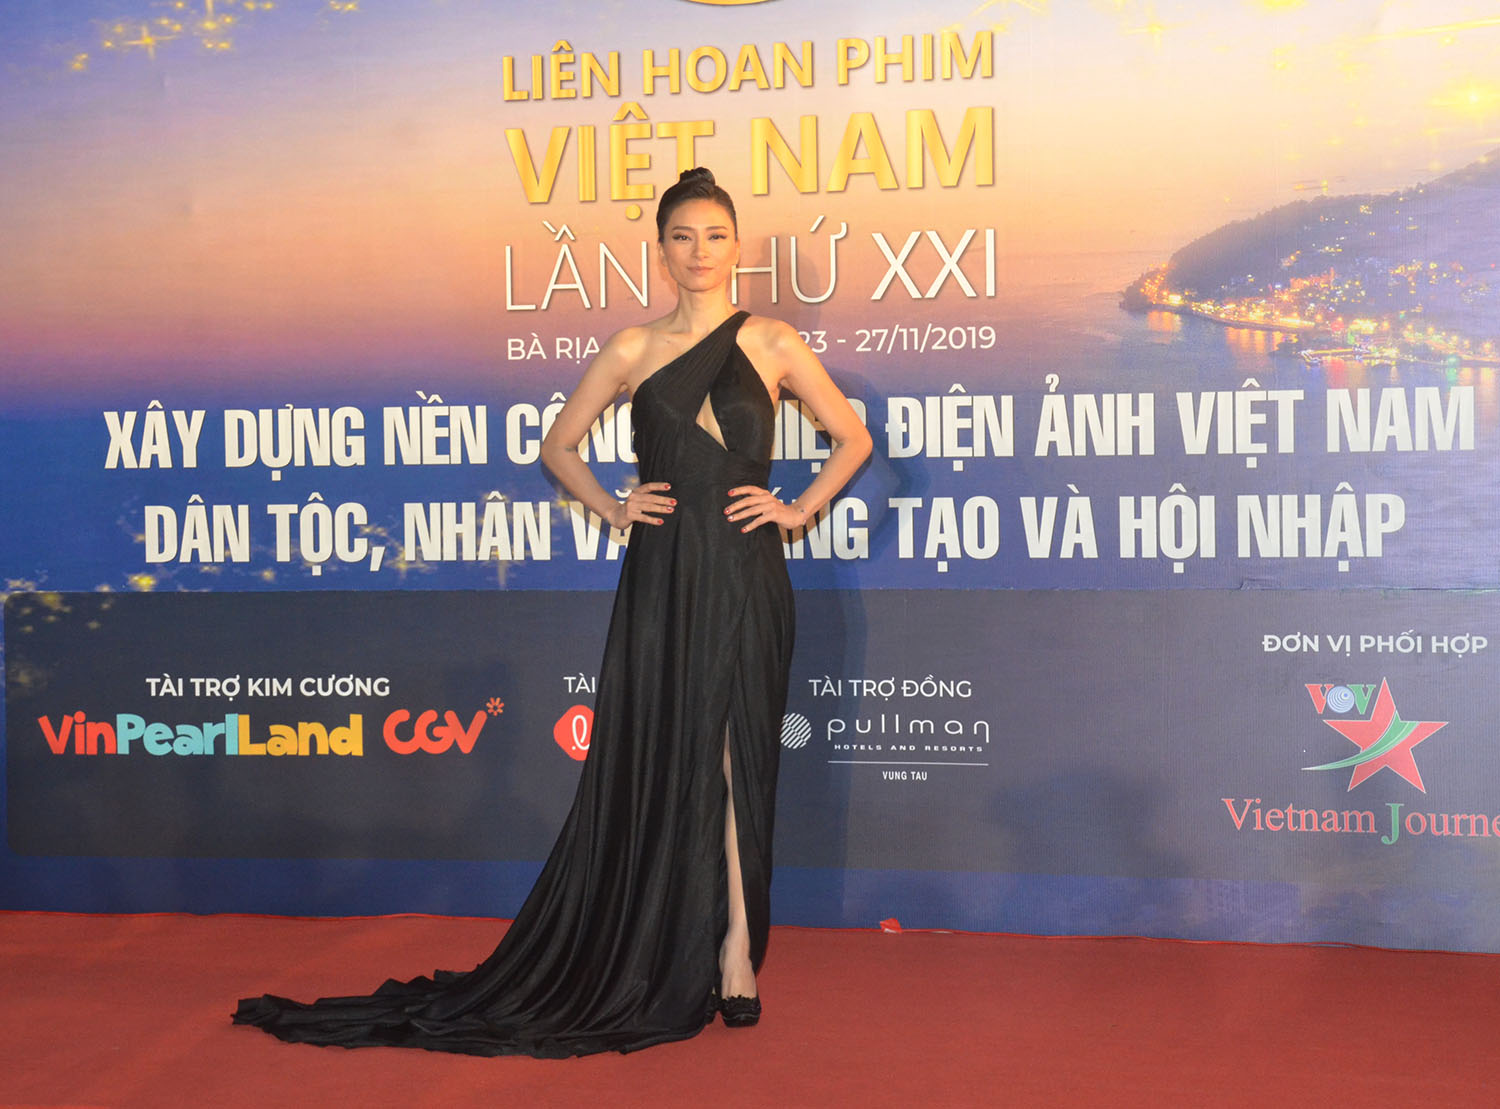 Diễn viên, nhà sản xuất Ngô Thanh Vân tham dự chương trình bế mạc. Cô là diễn viên chính và là nhà sản xuất phim Hai Phượng. Bộ phim đạt doanh thu trên 200 tỷ đồng, tranh giải ở hạng mục Phim truyện.